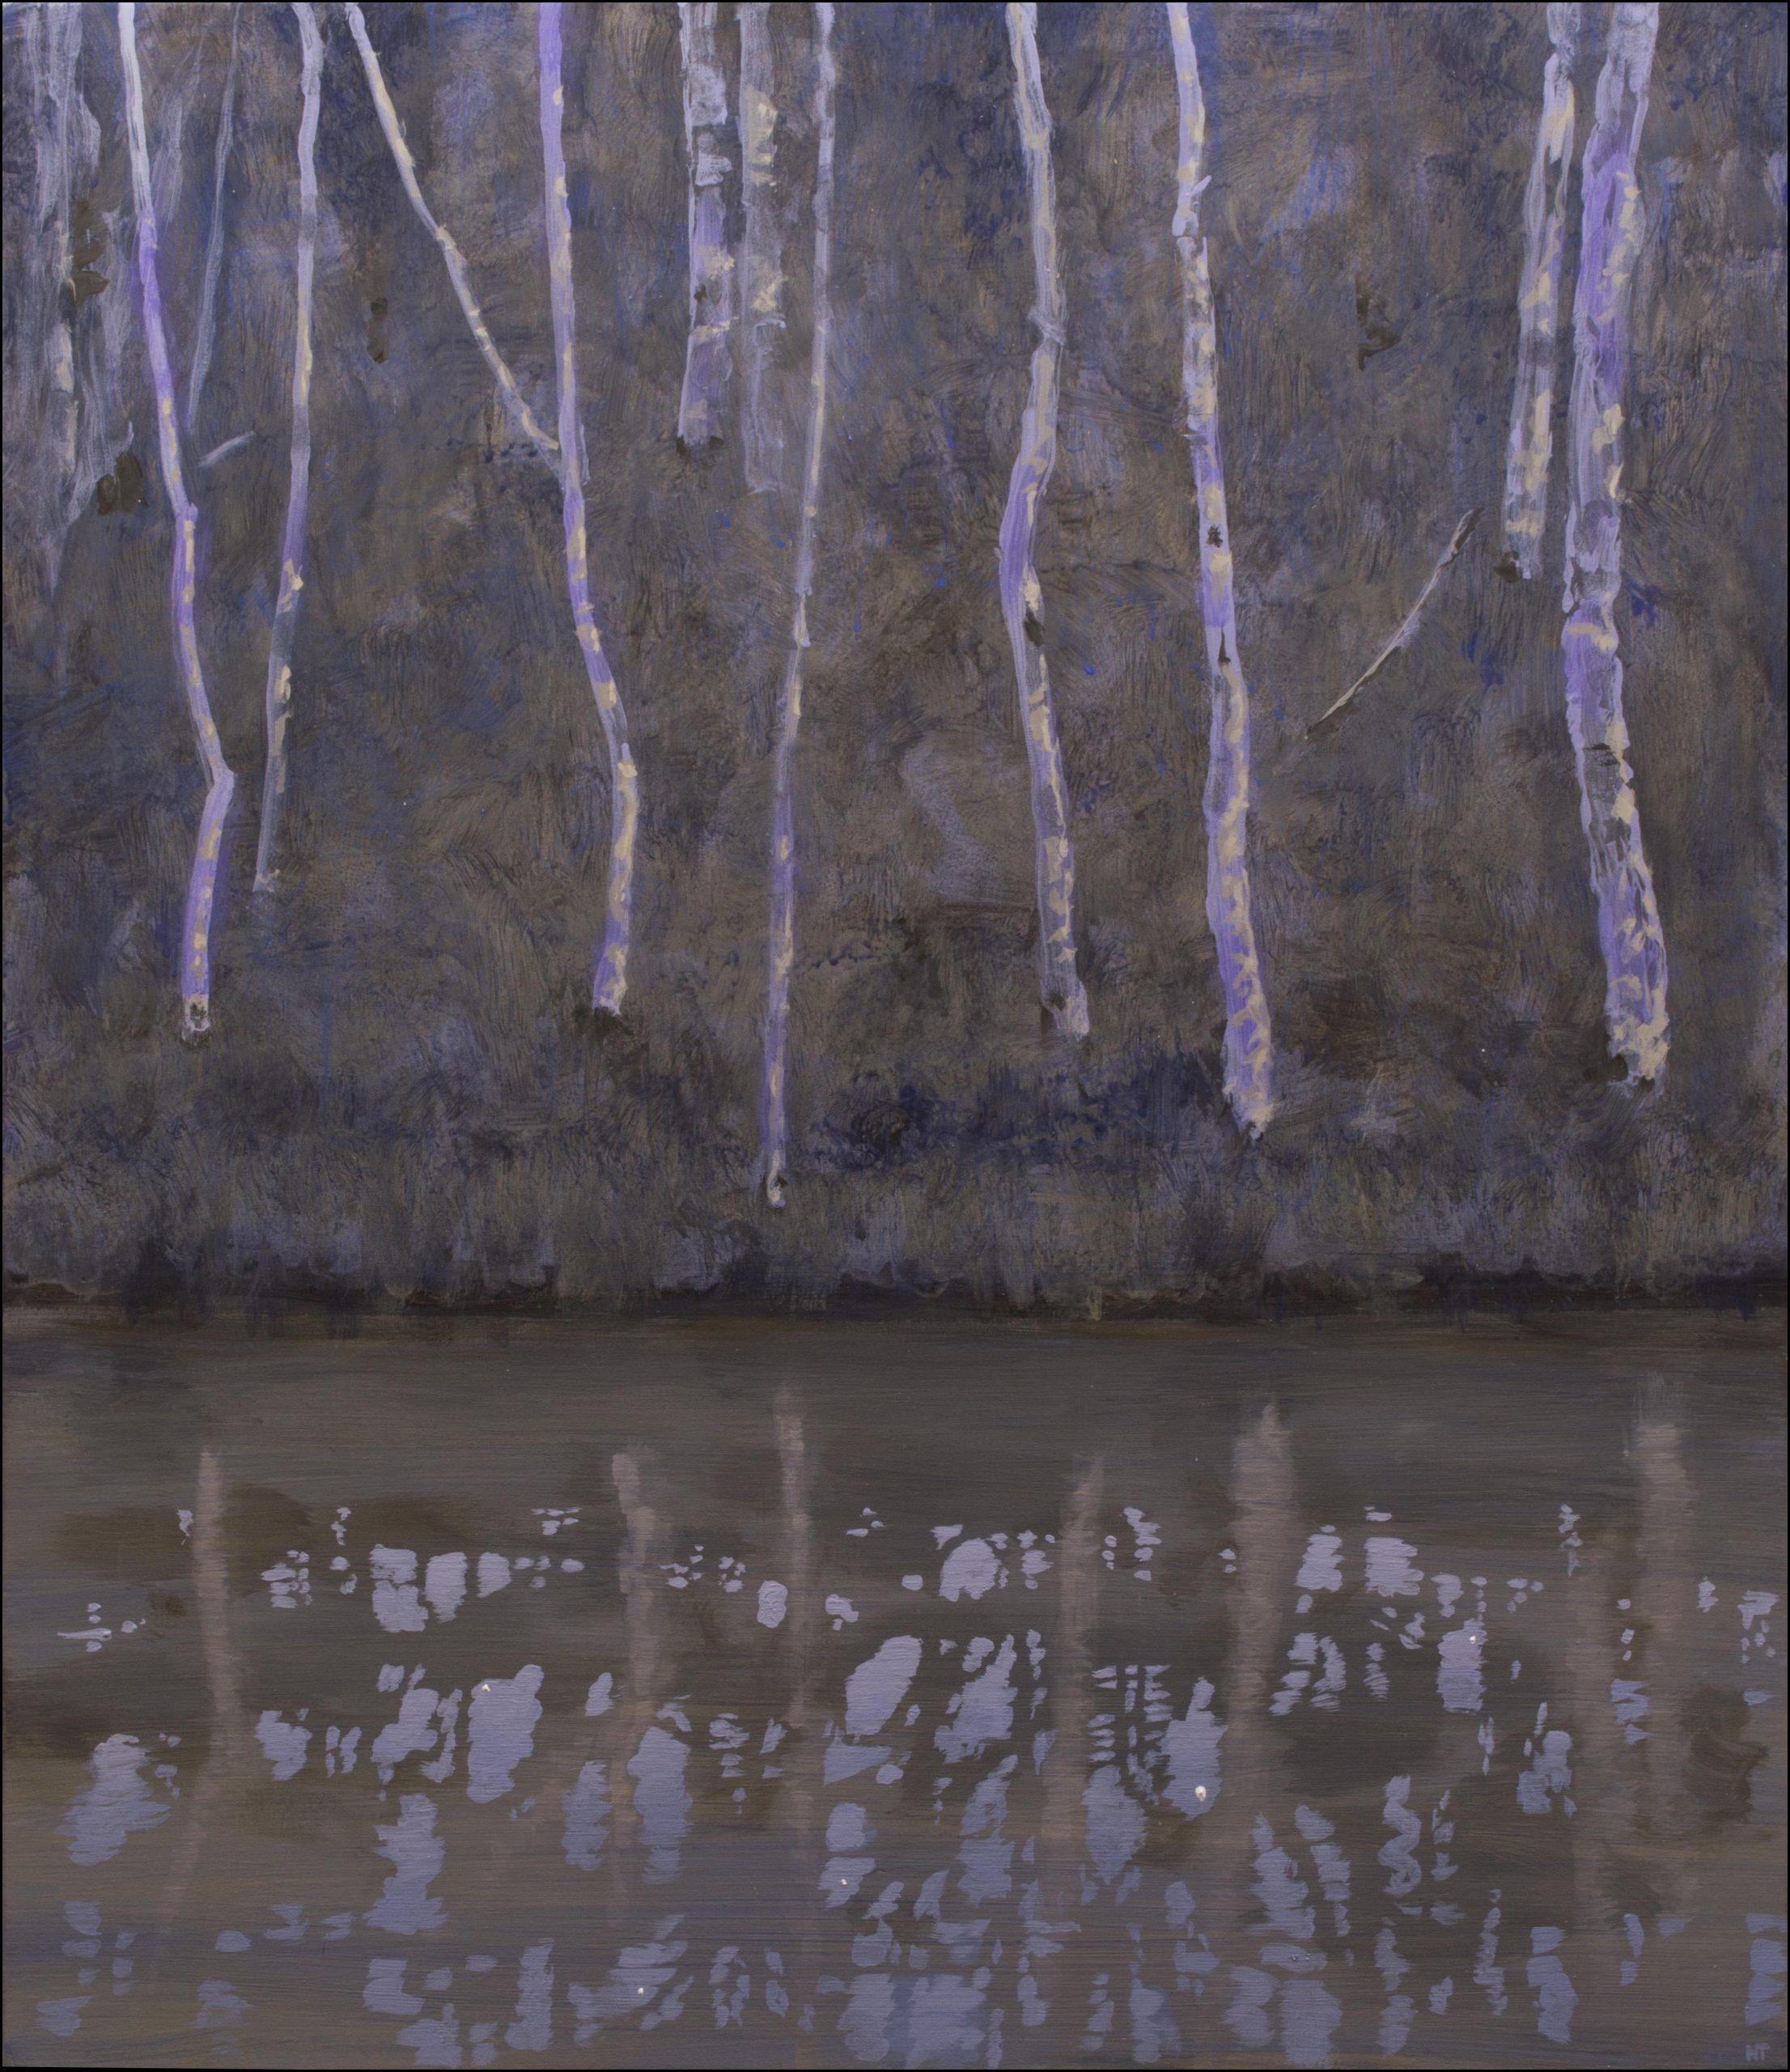 Neil Taylor 'Dusk Lagoon' acrylic on canvas 76 x 66cm $5,200 SOLD